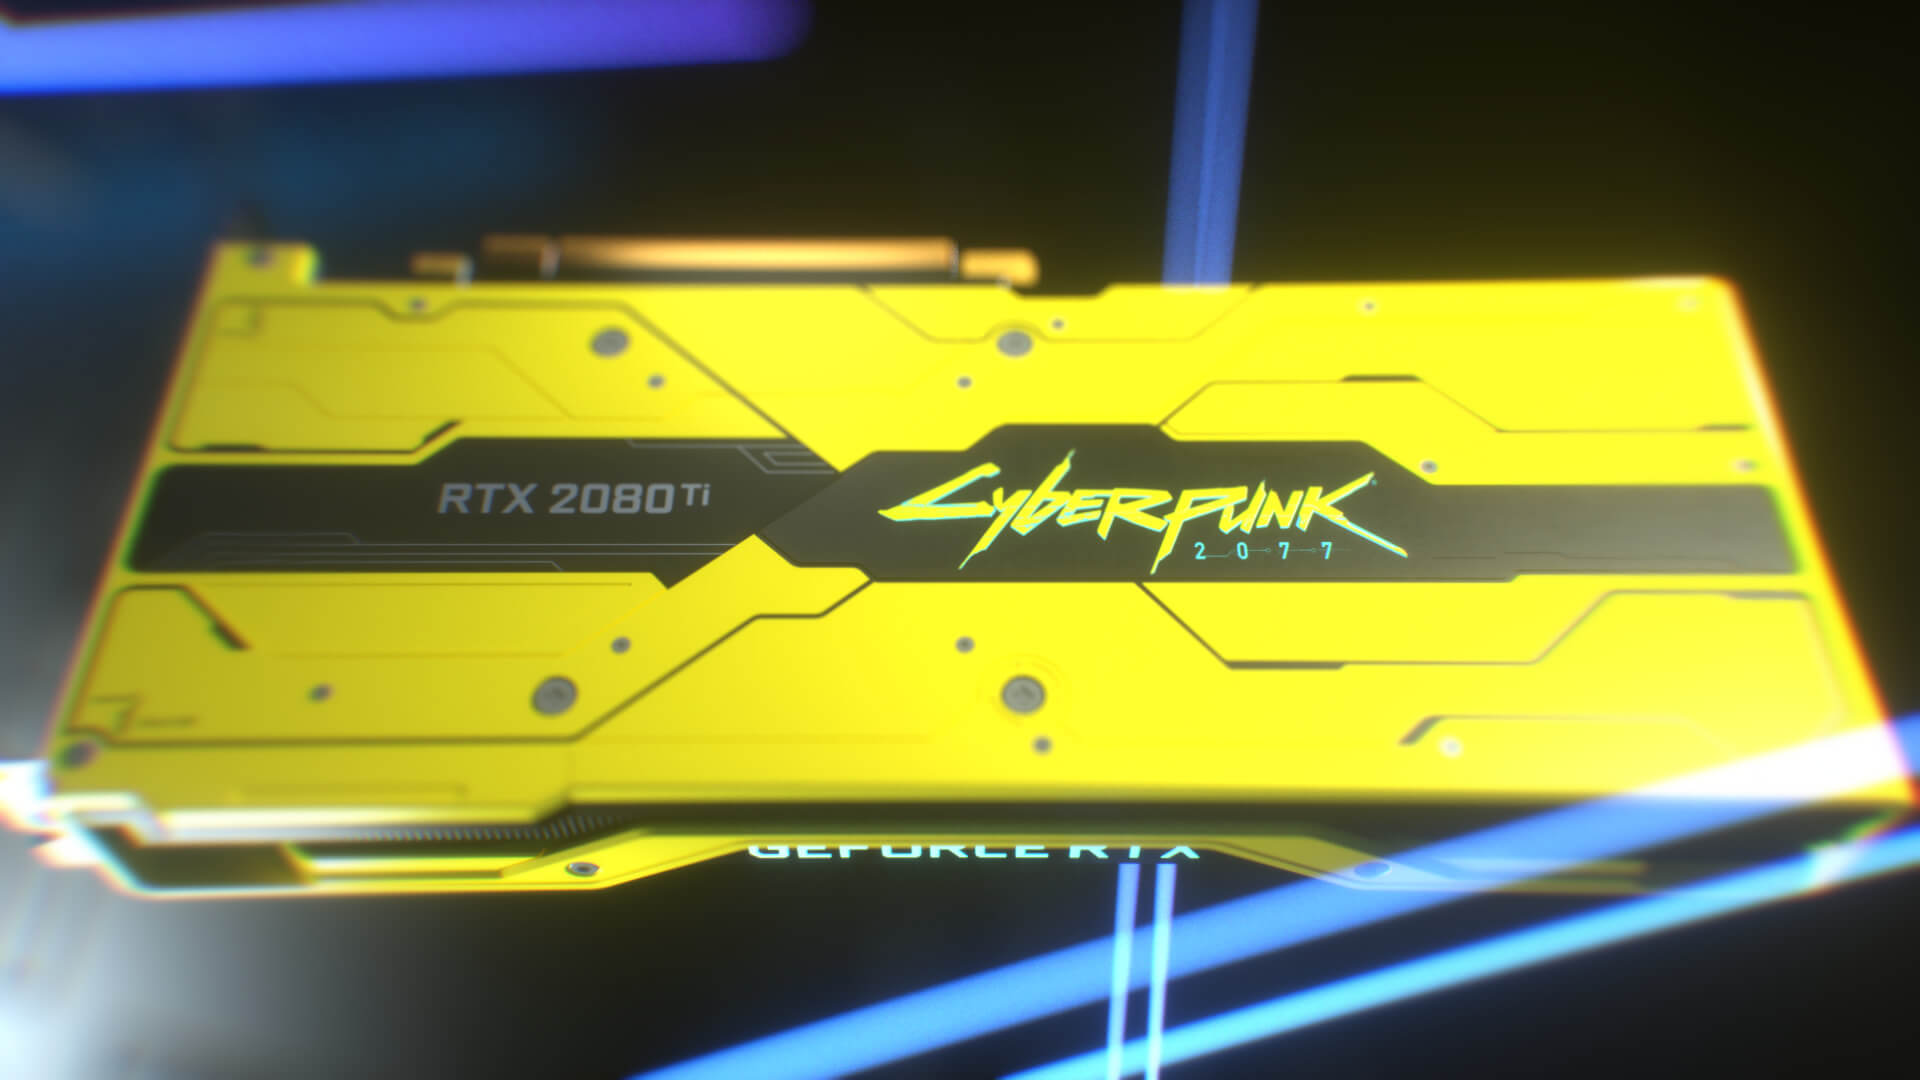 GeForce RTX 2080 Ti Cyberpunk 2077 Edition 200 unidades a SORTEO